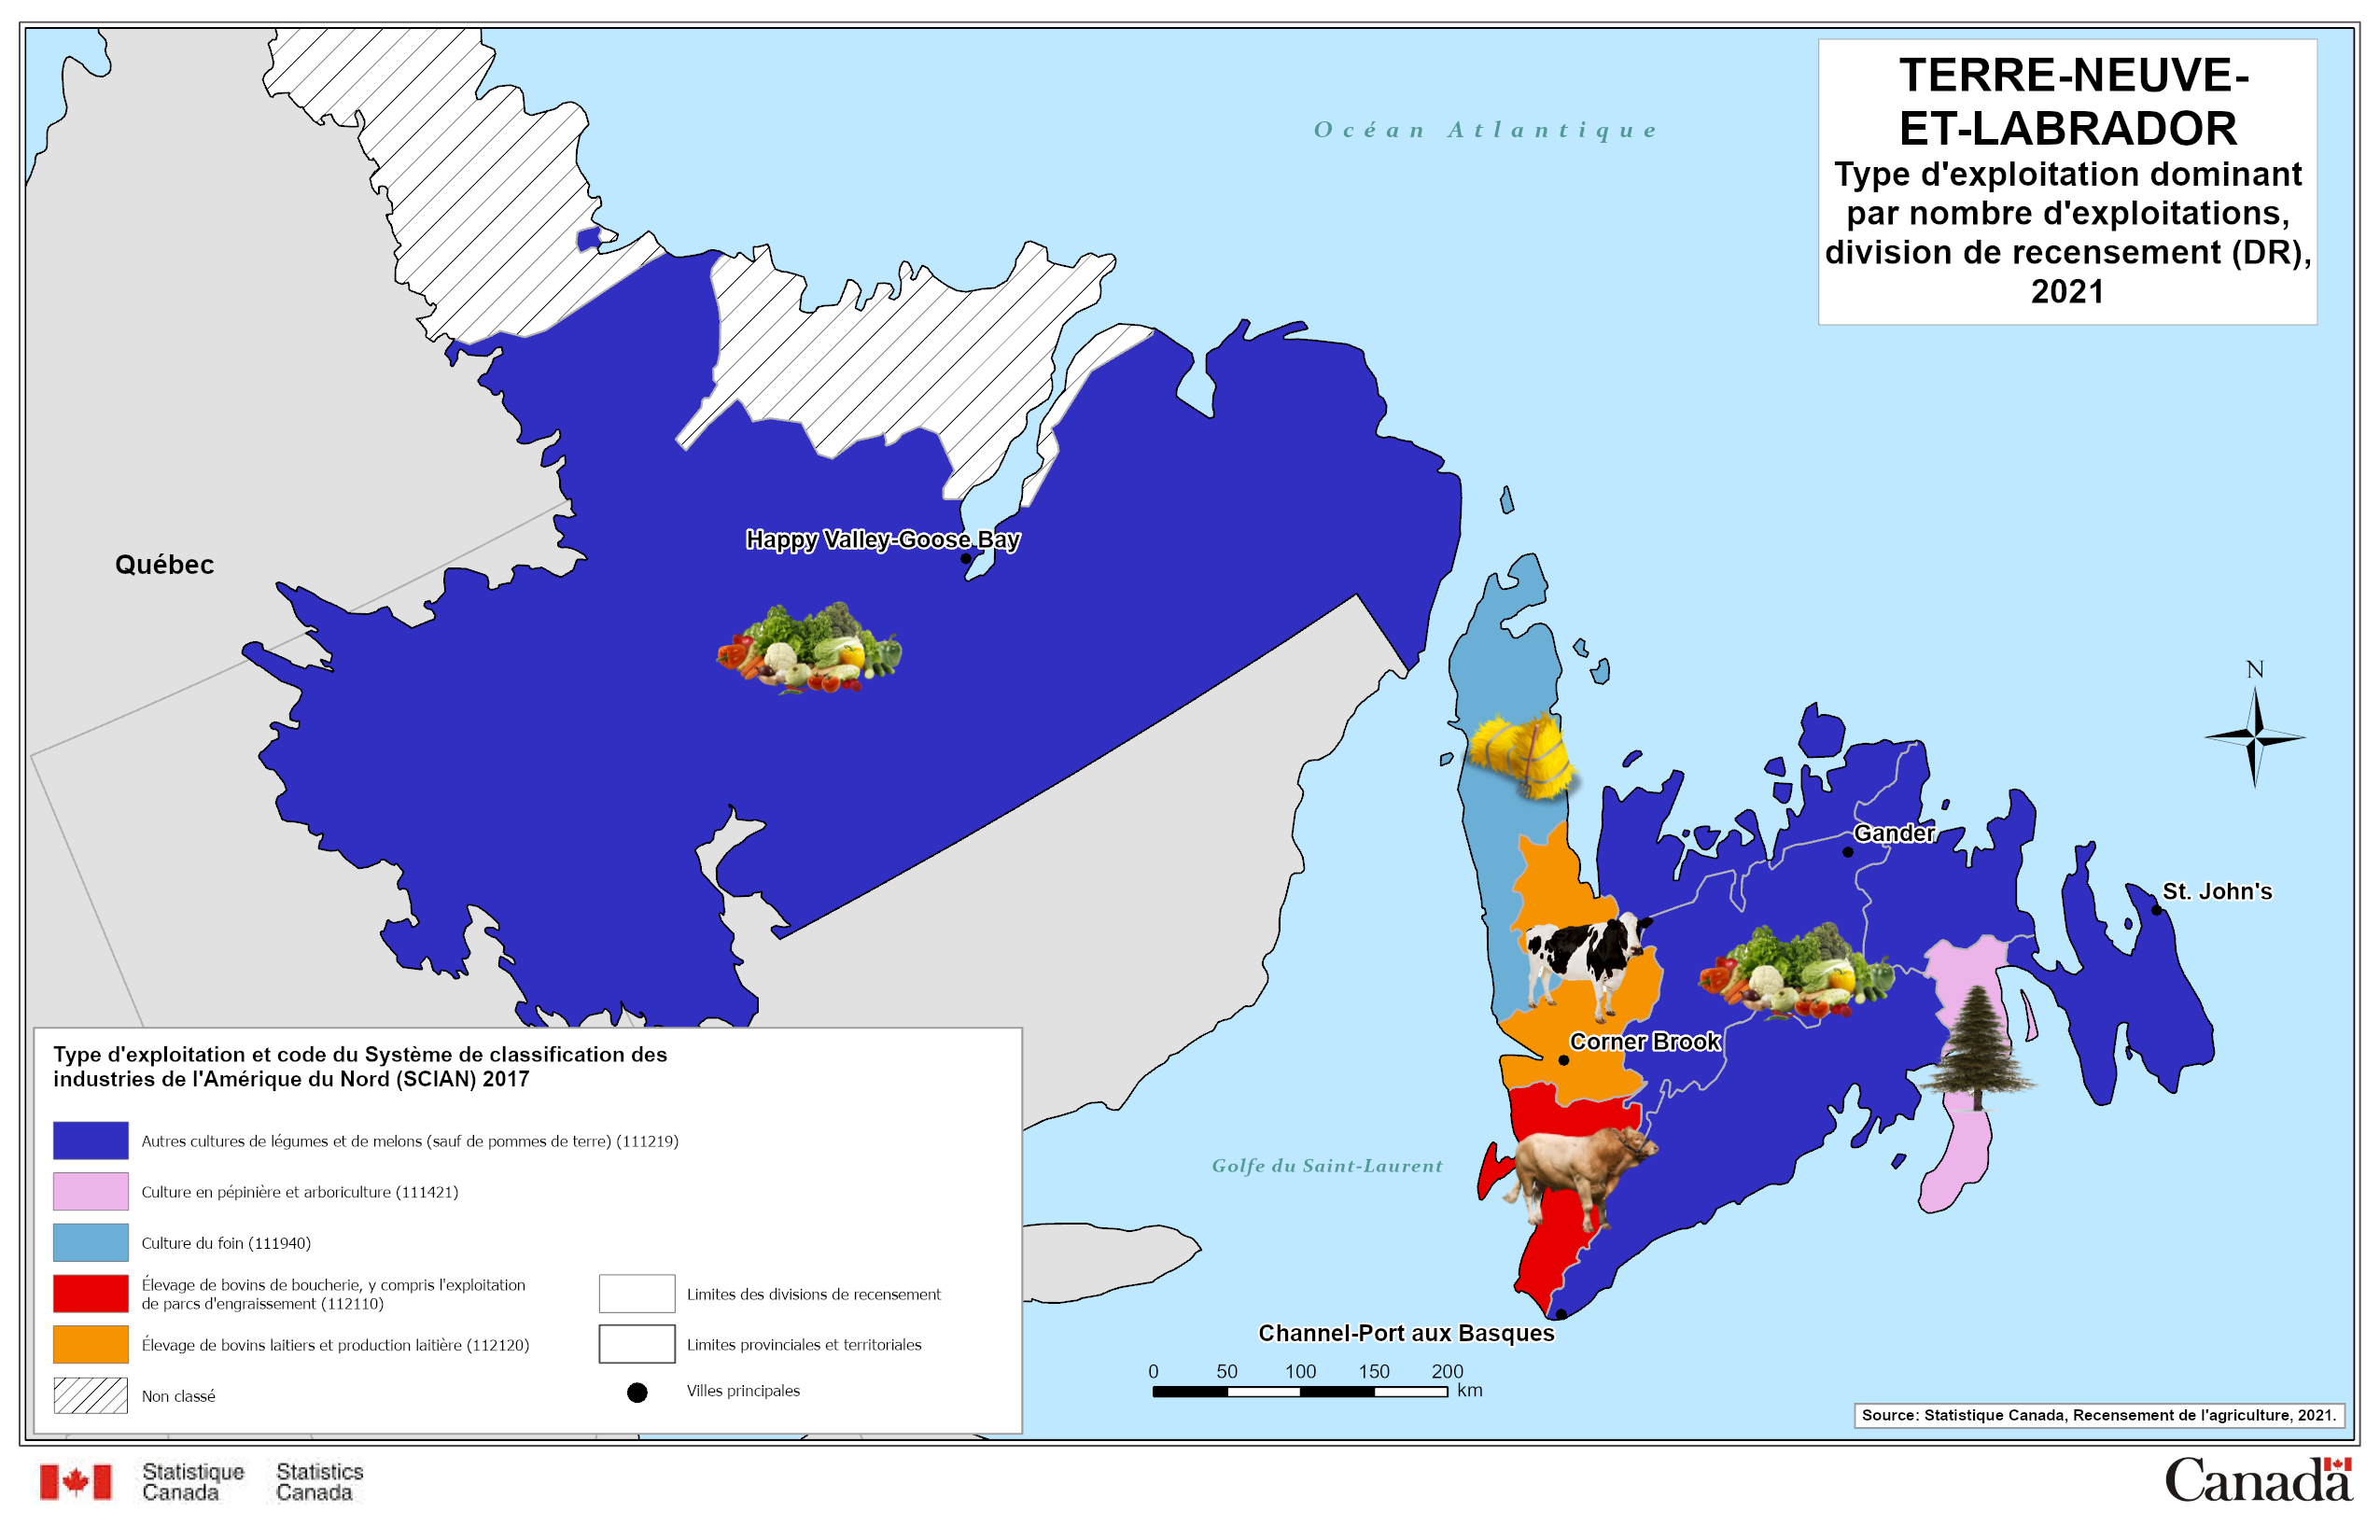 Terre-Neuve-et-Labrador - Type d'exploitation dominant par nombre d'exploitations, division de recensement (DR), 2021